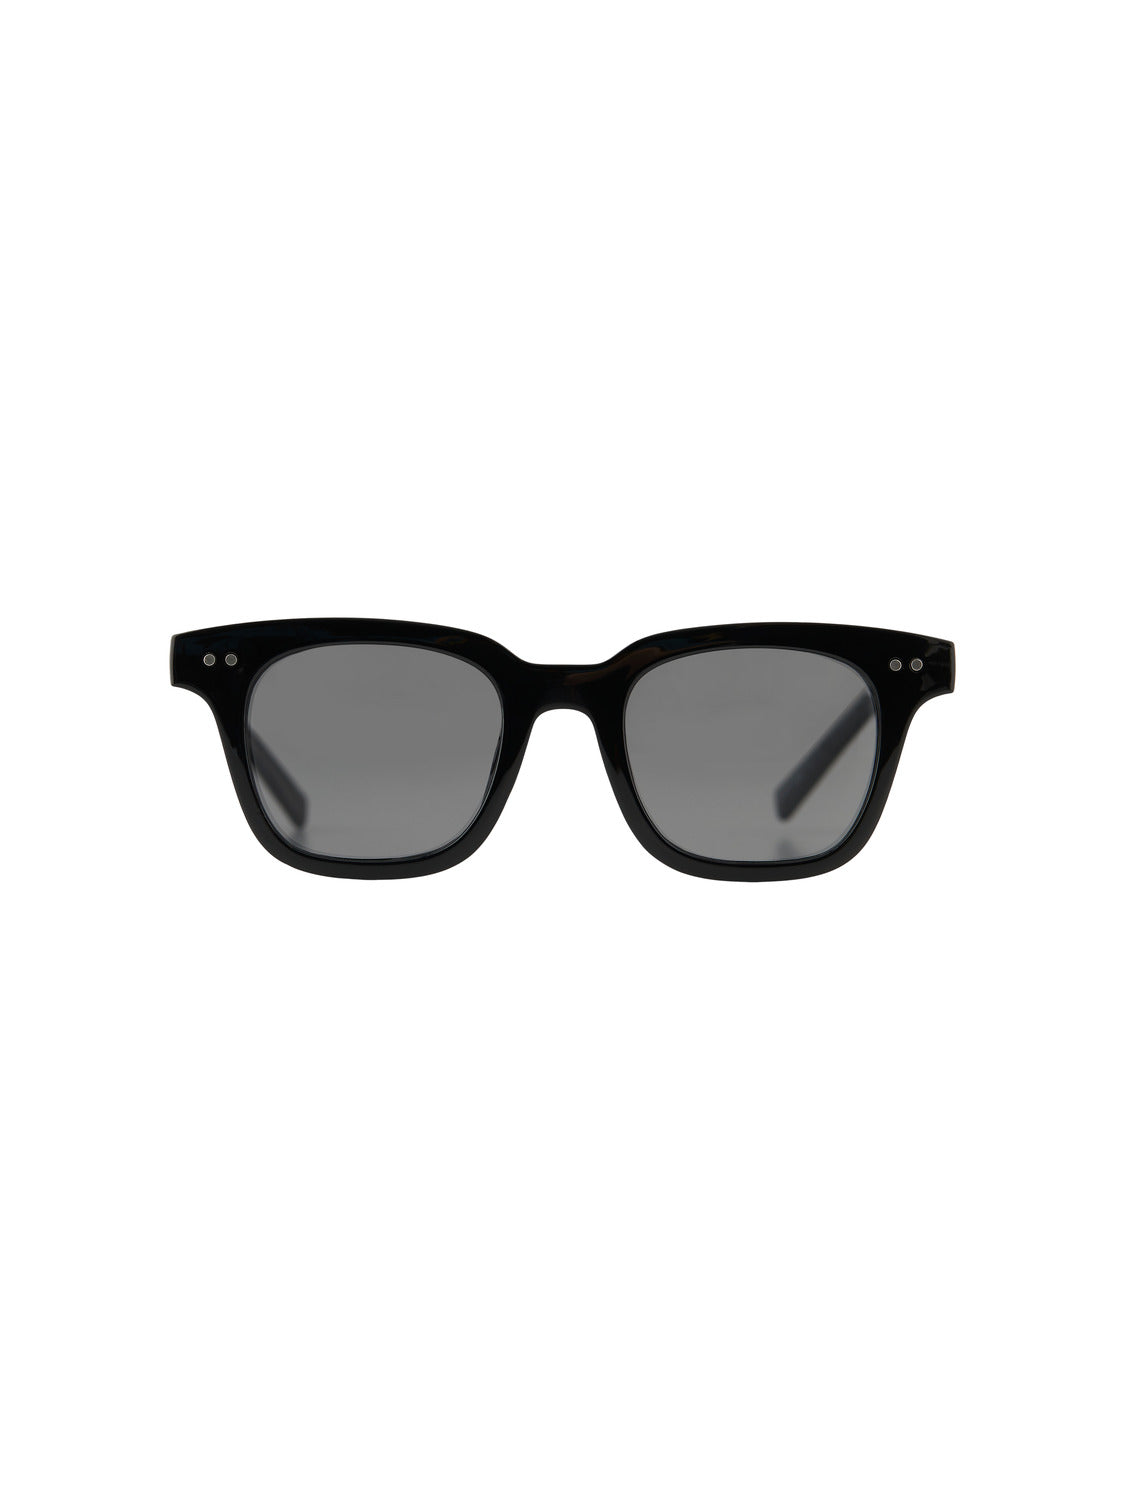 PCHEMMA Sunglasses - Black